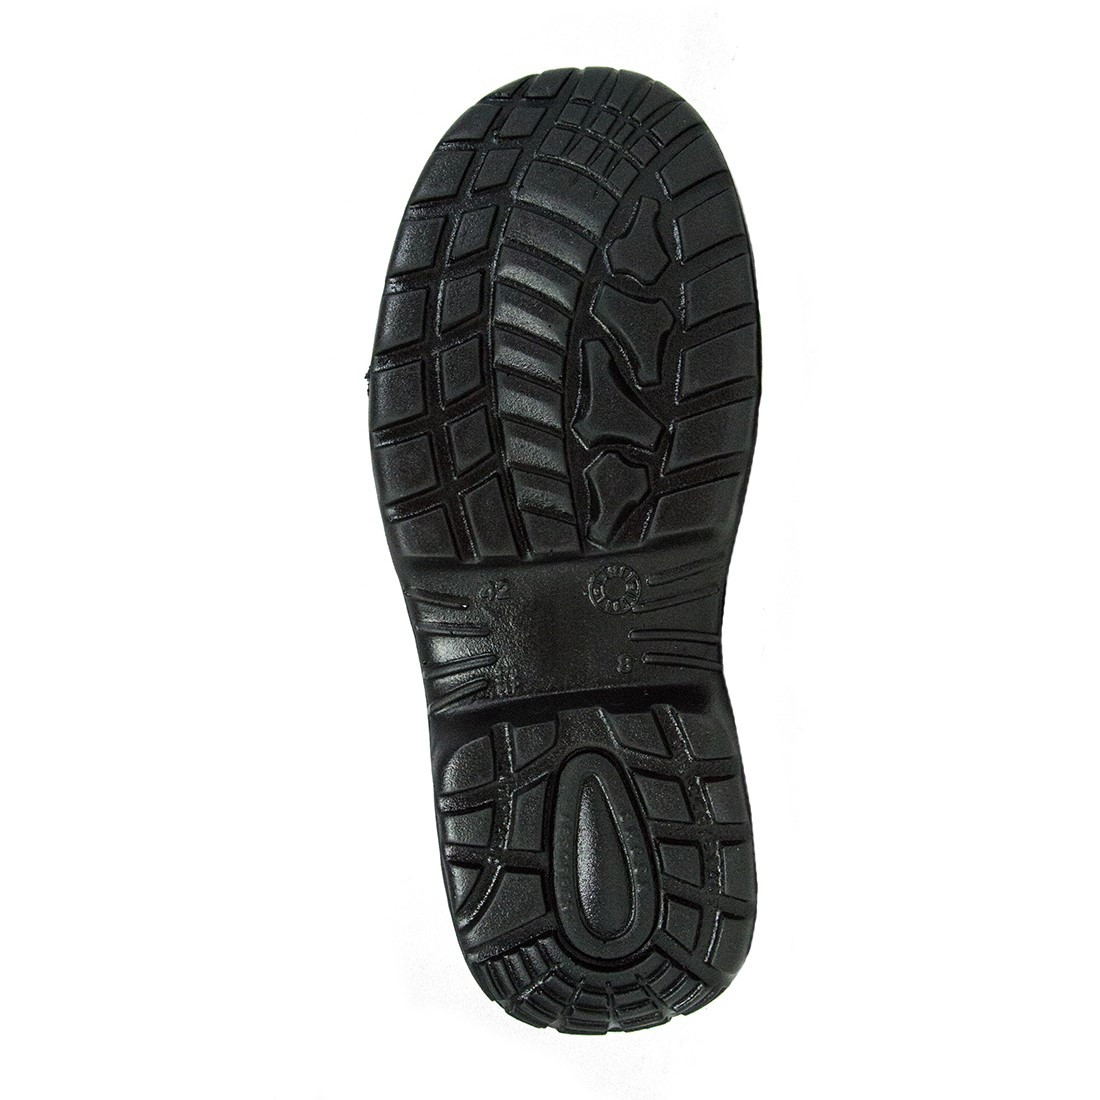 Etoile Shoe S3 SRC - Calzature di protezione